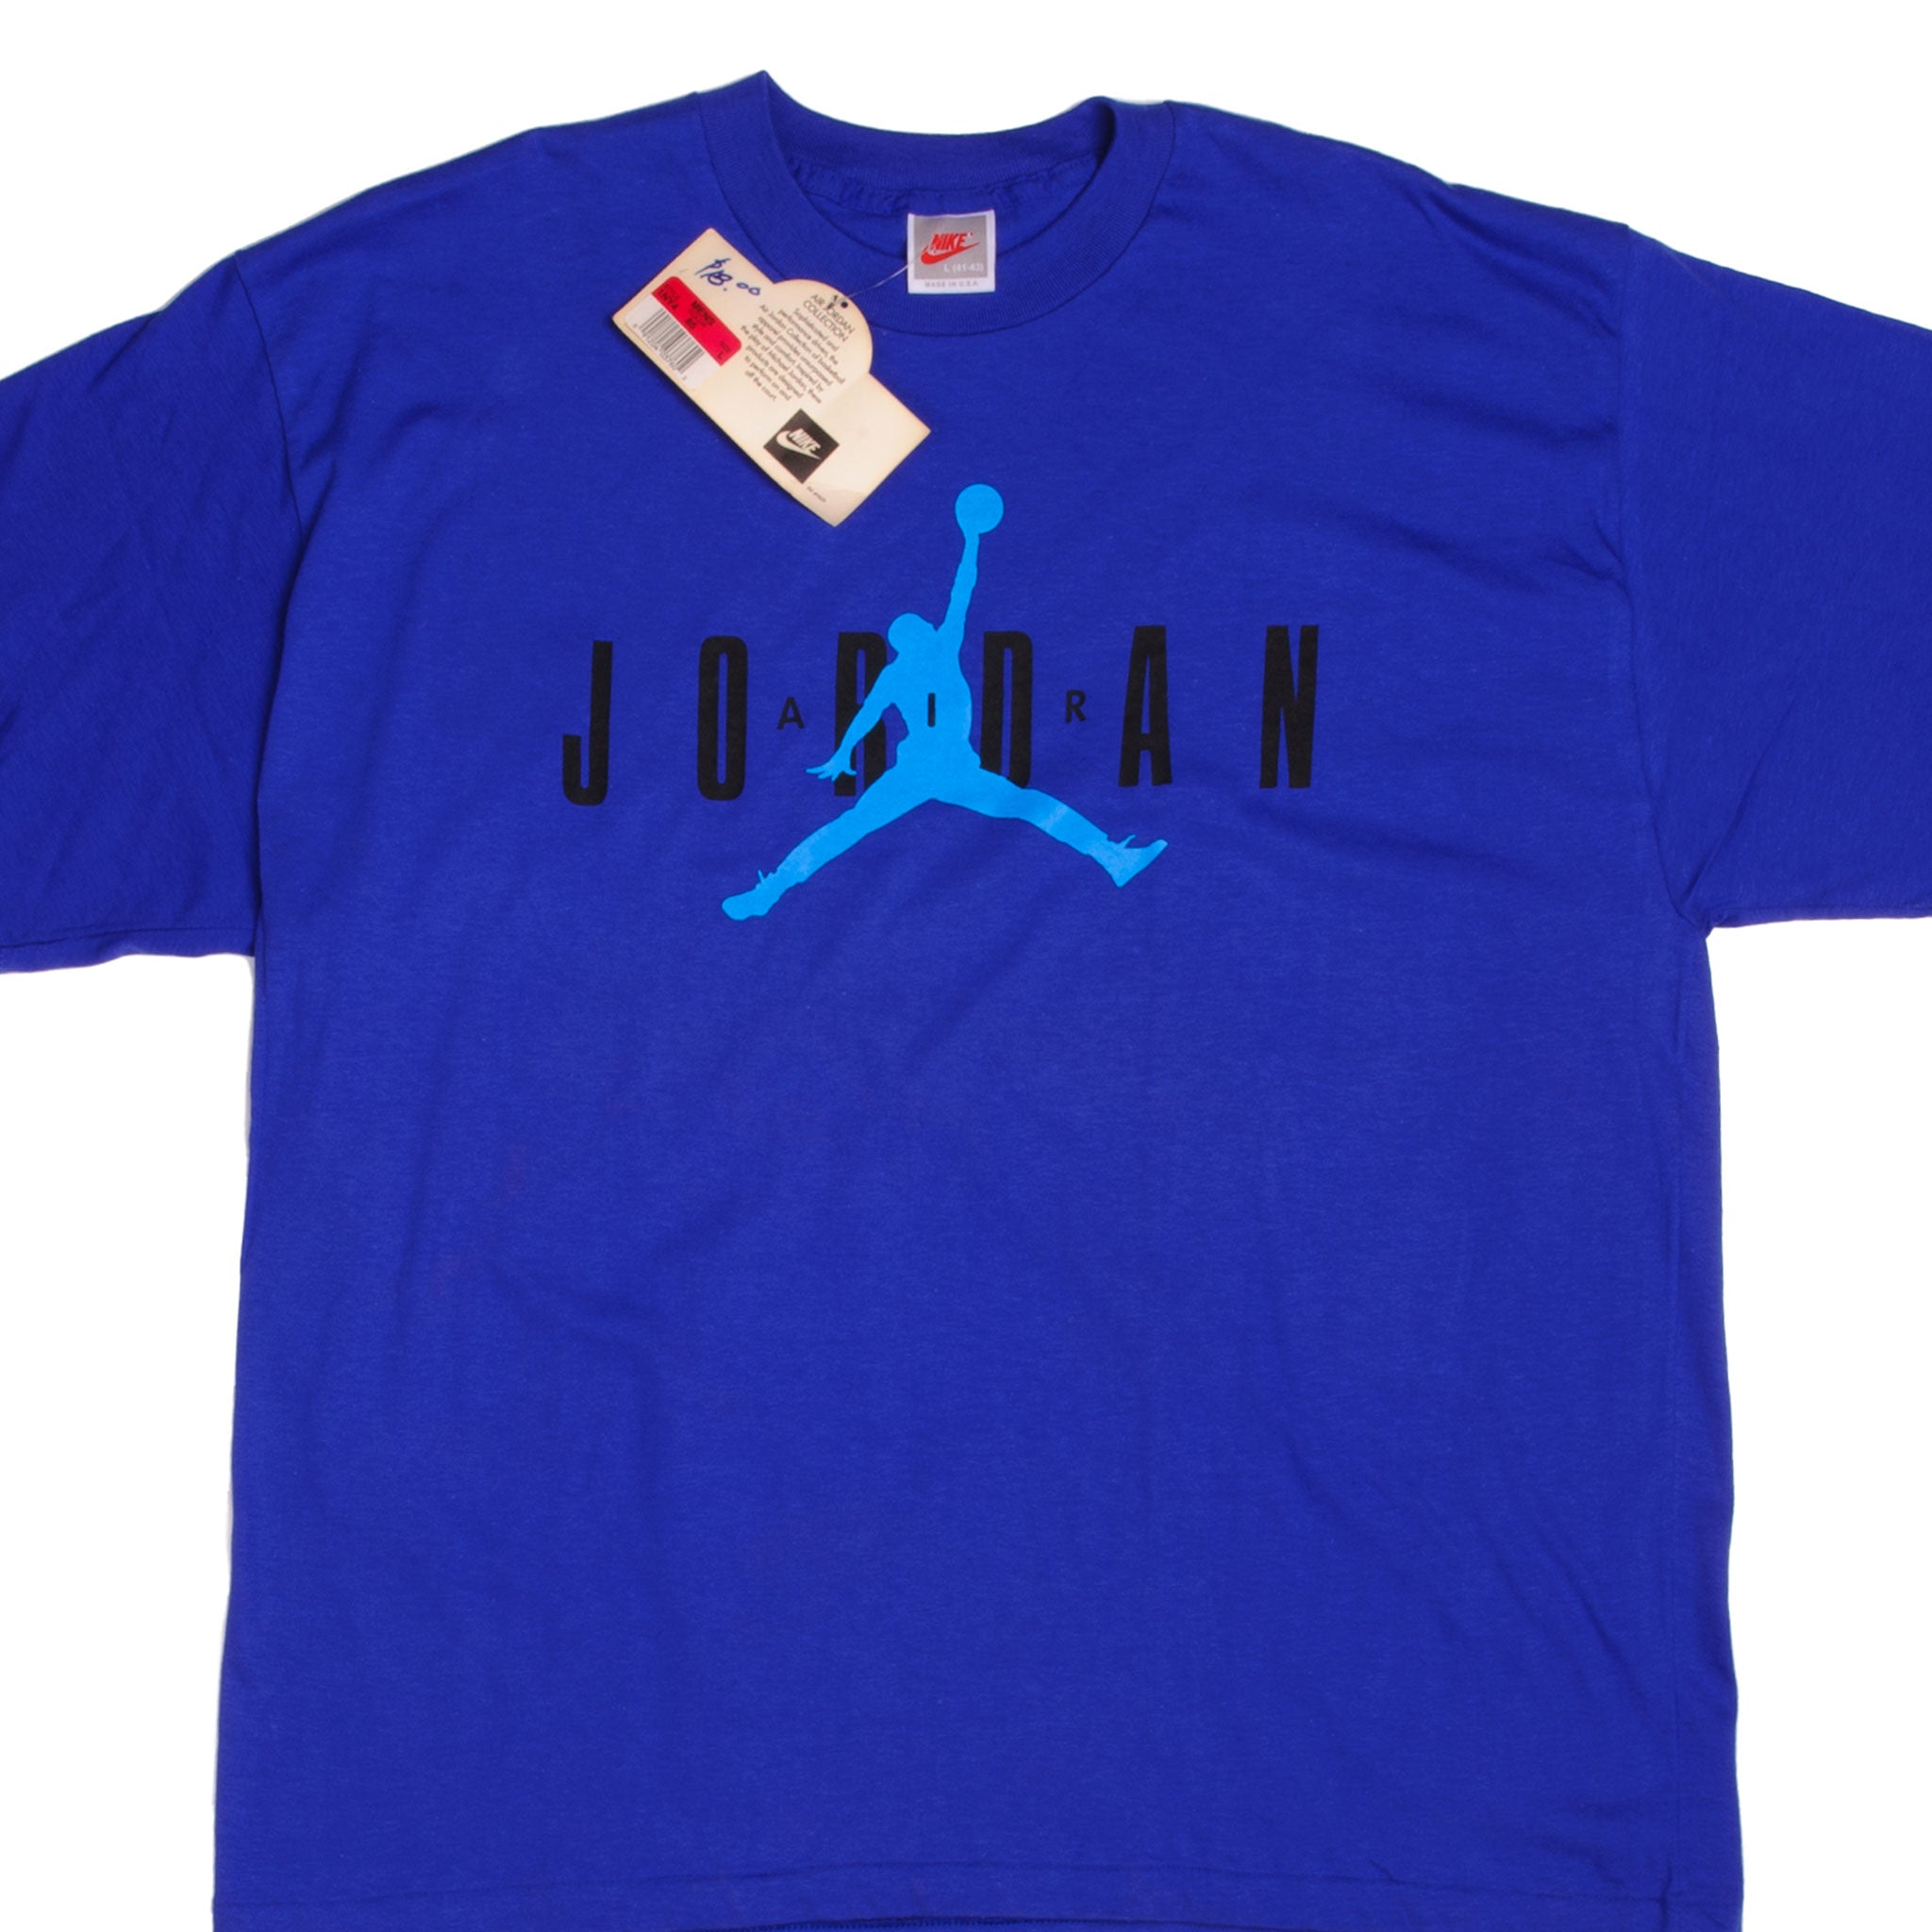 blue michael jordan shirt